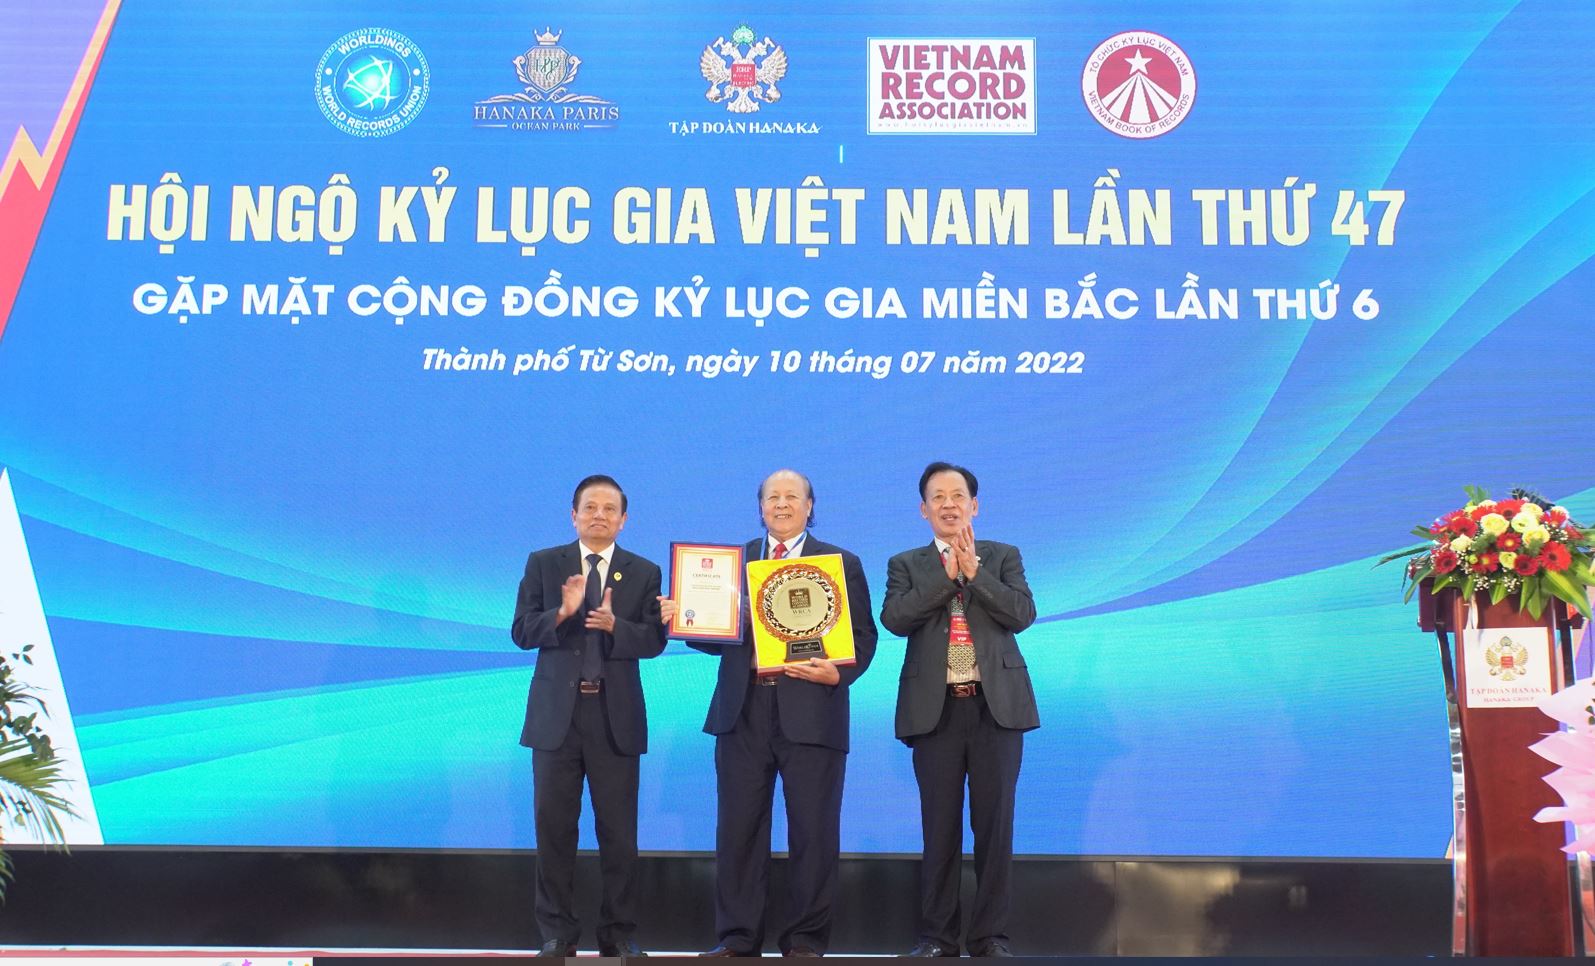 Năm 2022, trong chương trình Hội ngộ Kỷ lục gia lần thứ 47, Viện nội dung Kỷ lục Thế giới (WRCA) trực thuộc Liên minh Kỷ lục Thế giới đã trao tặng đĩa vàng nội dung tới Kỷ lục gia, Bác sĩ Nguyễn Hữu Trọng cho những giá trị Kỷ lục về y học và nghệ thuật mà ông đã xác lập trước đó.